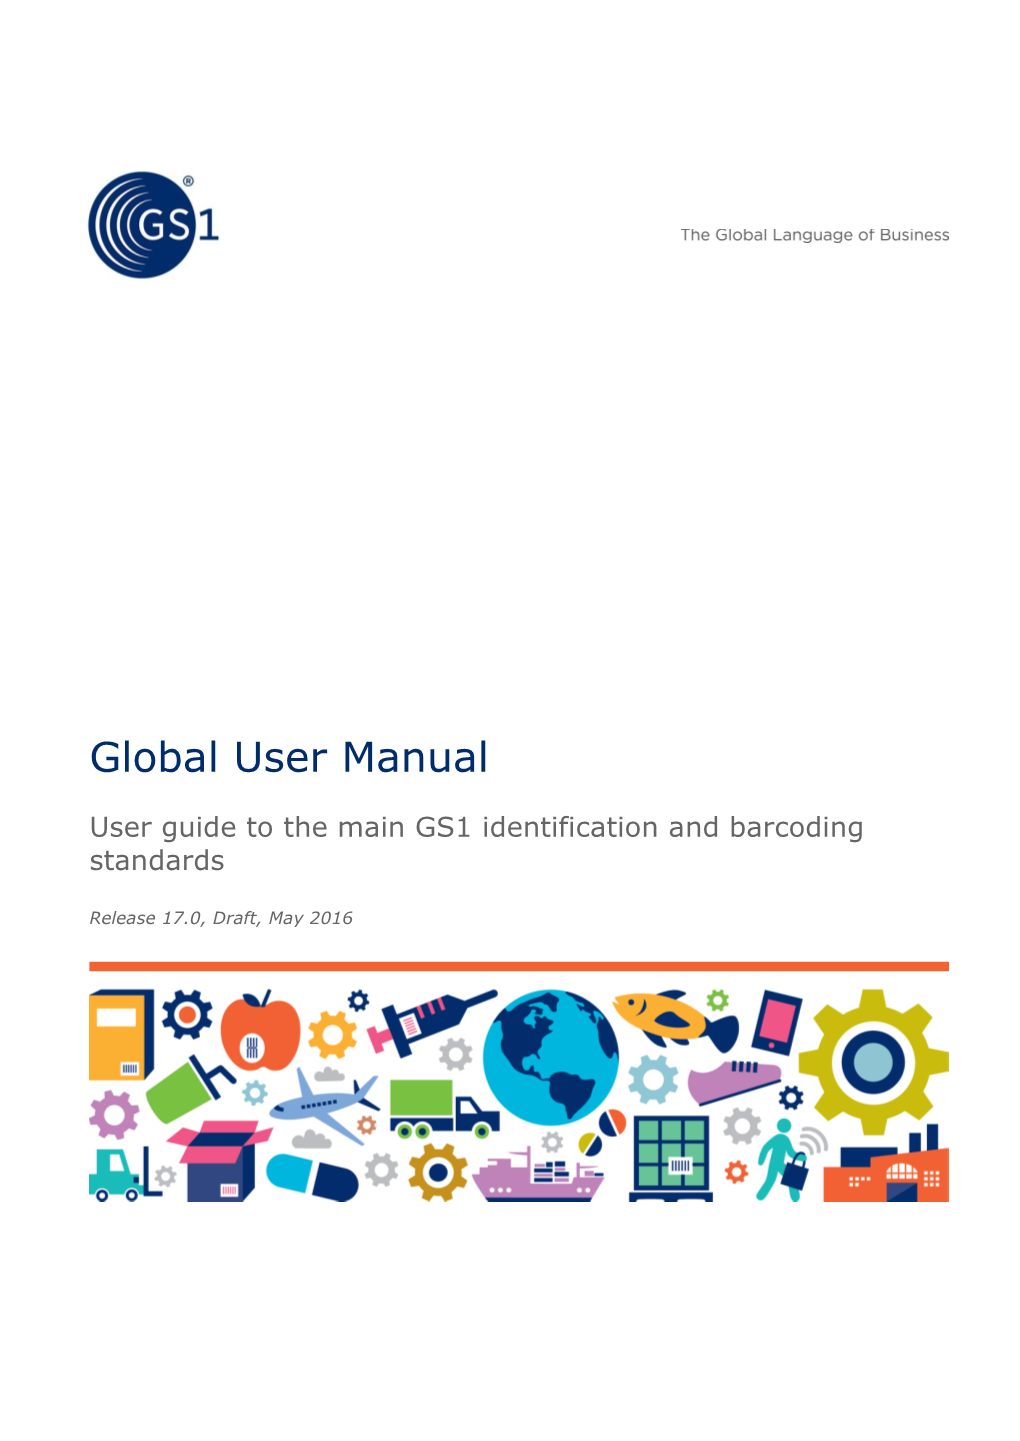 GS1 Global User Manual 2016